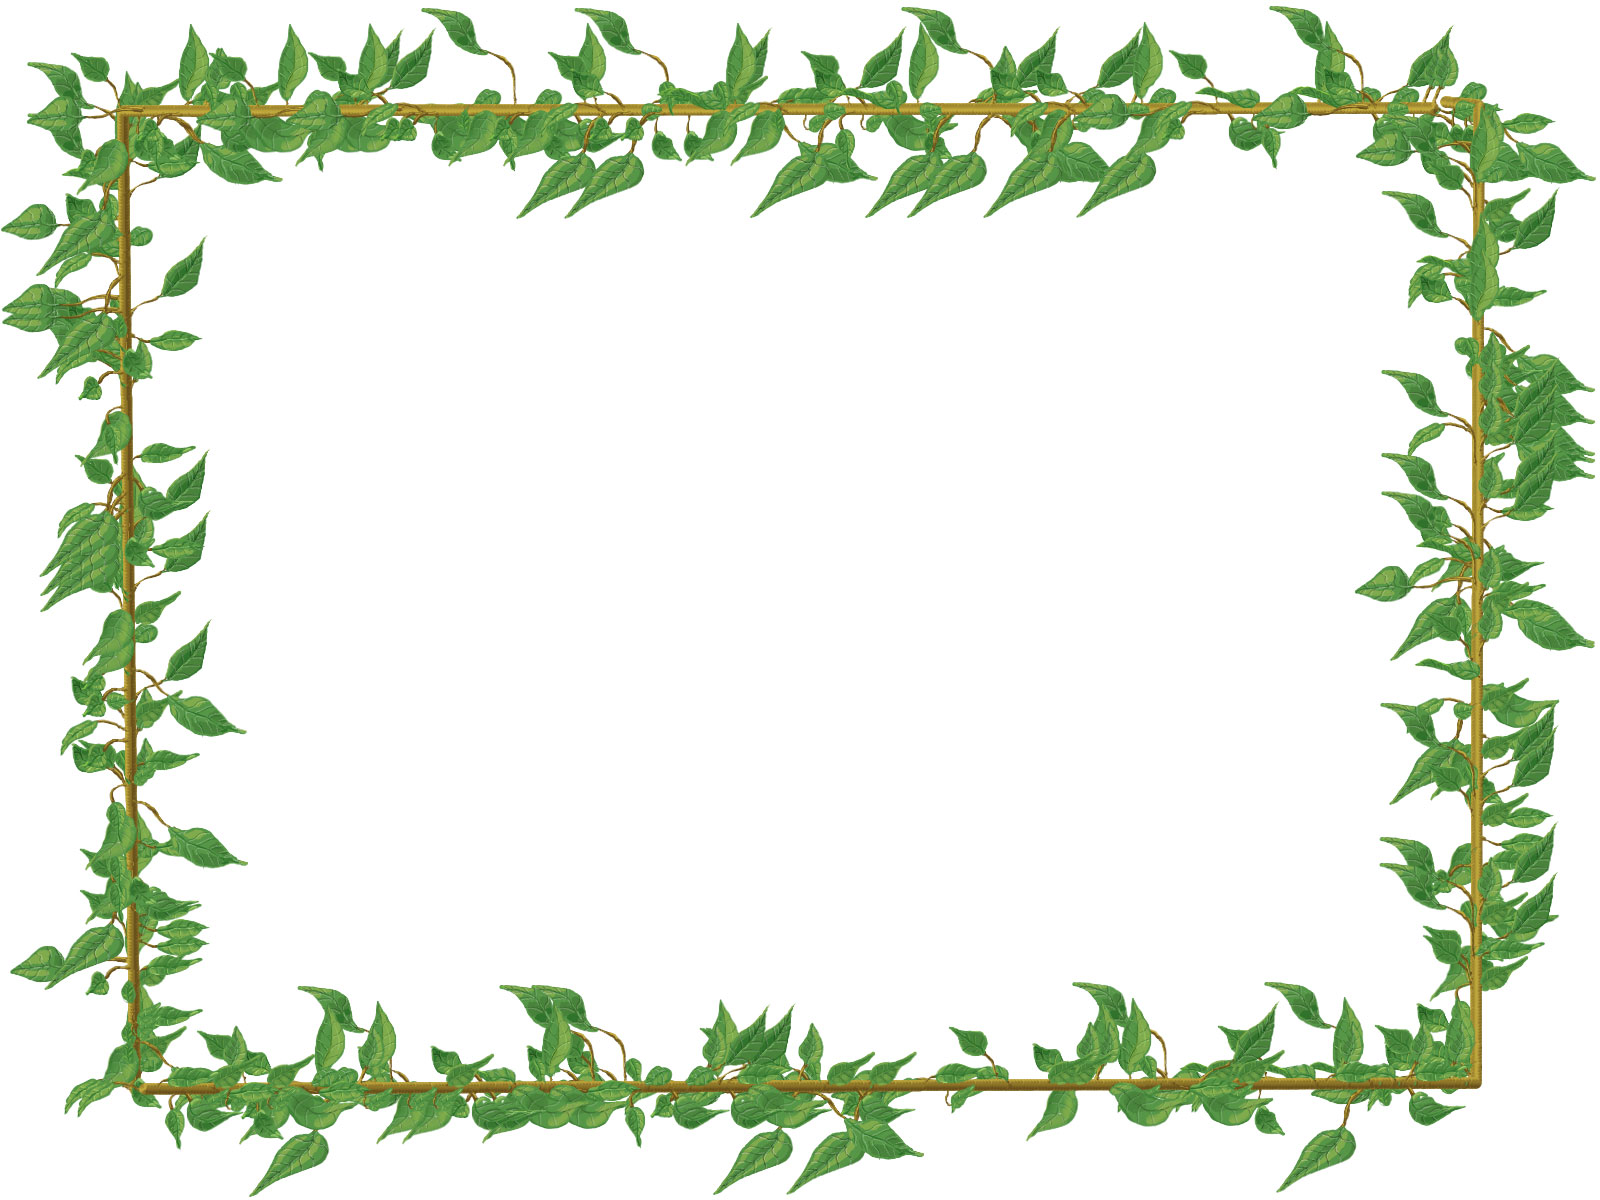 葉っぱ 草木のイラスト フリー素材 フレーム枠no 1015 からまる葉 緑